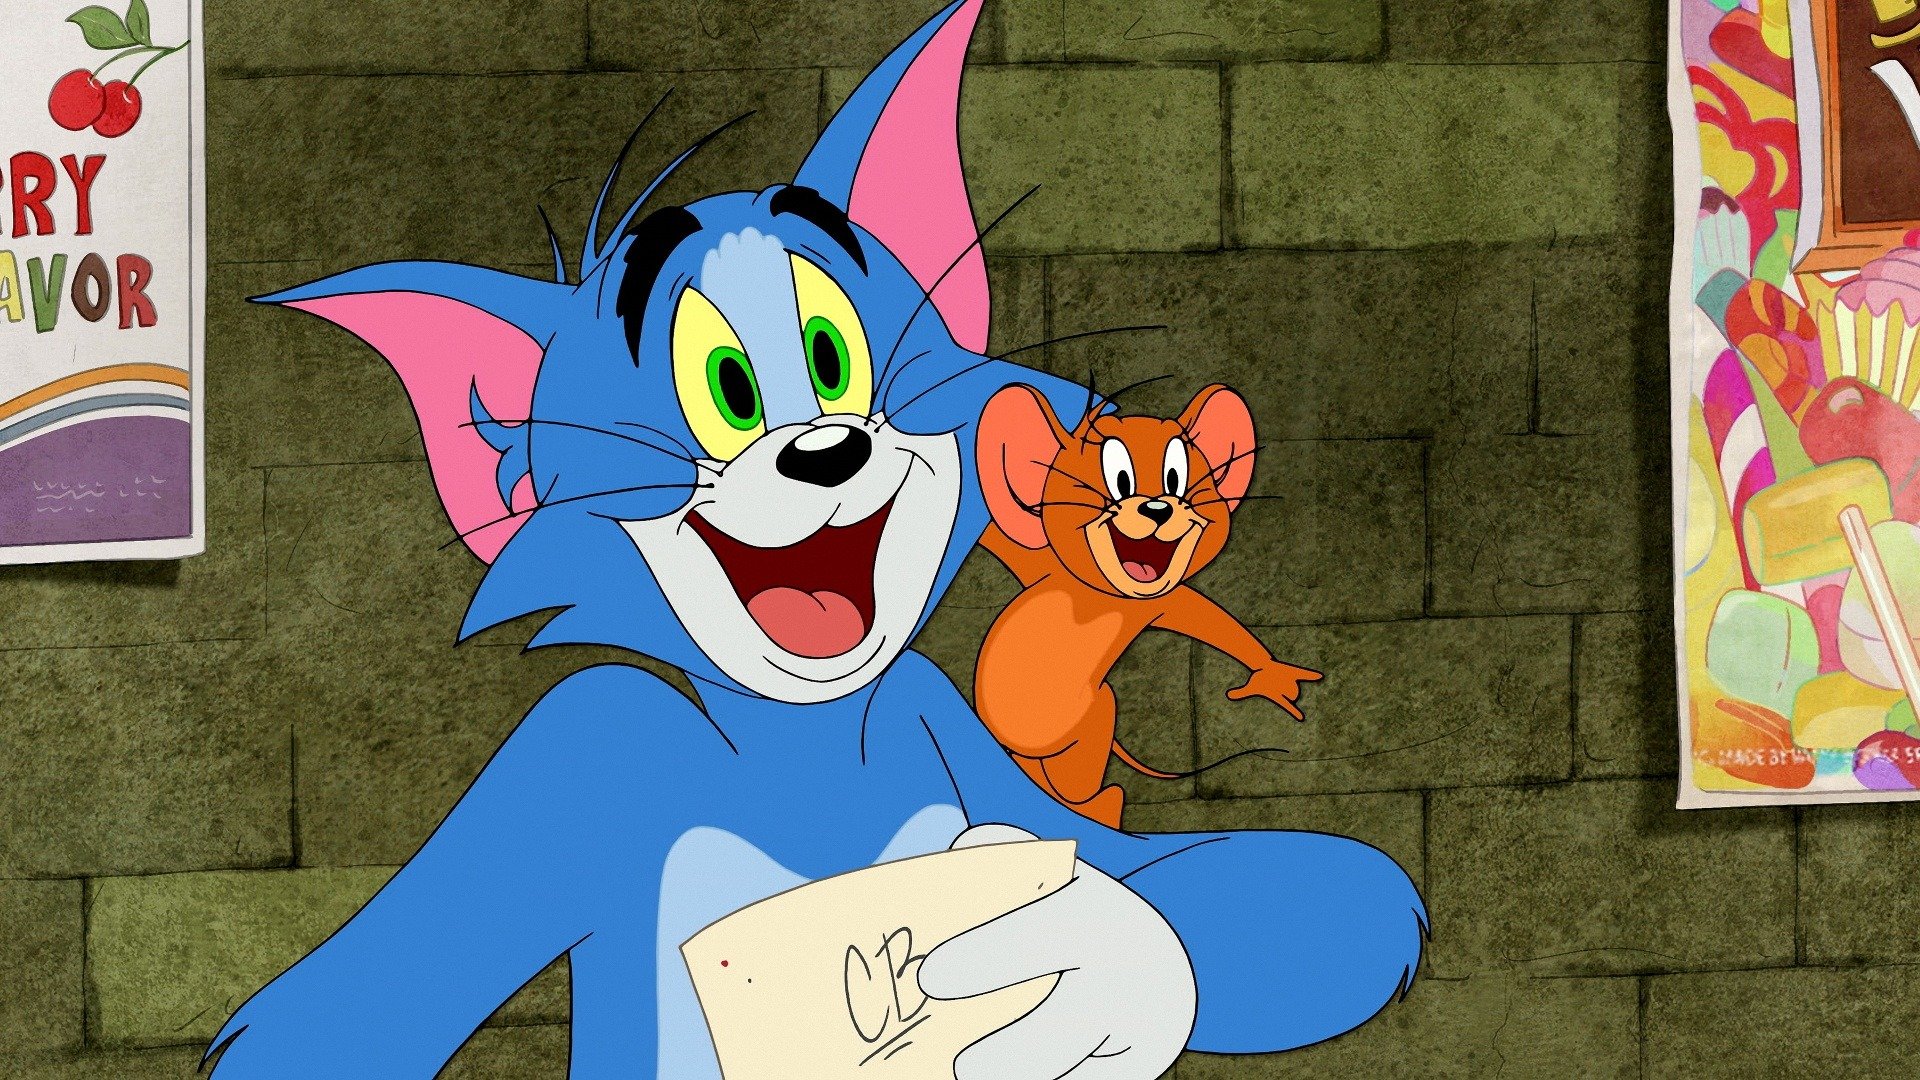 Tom & Jerry Show